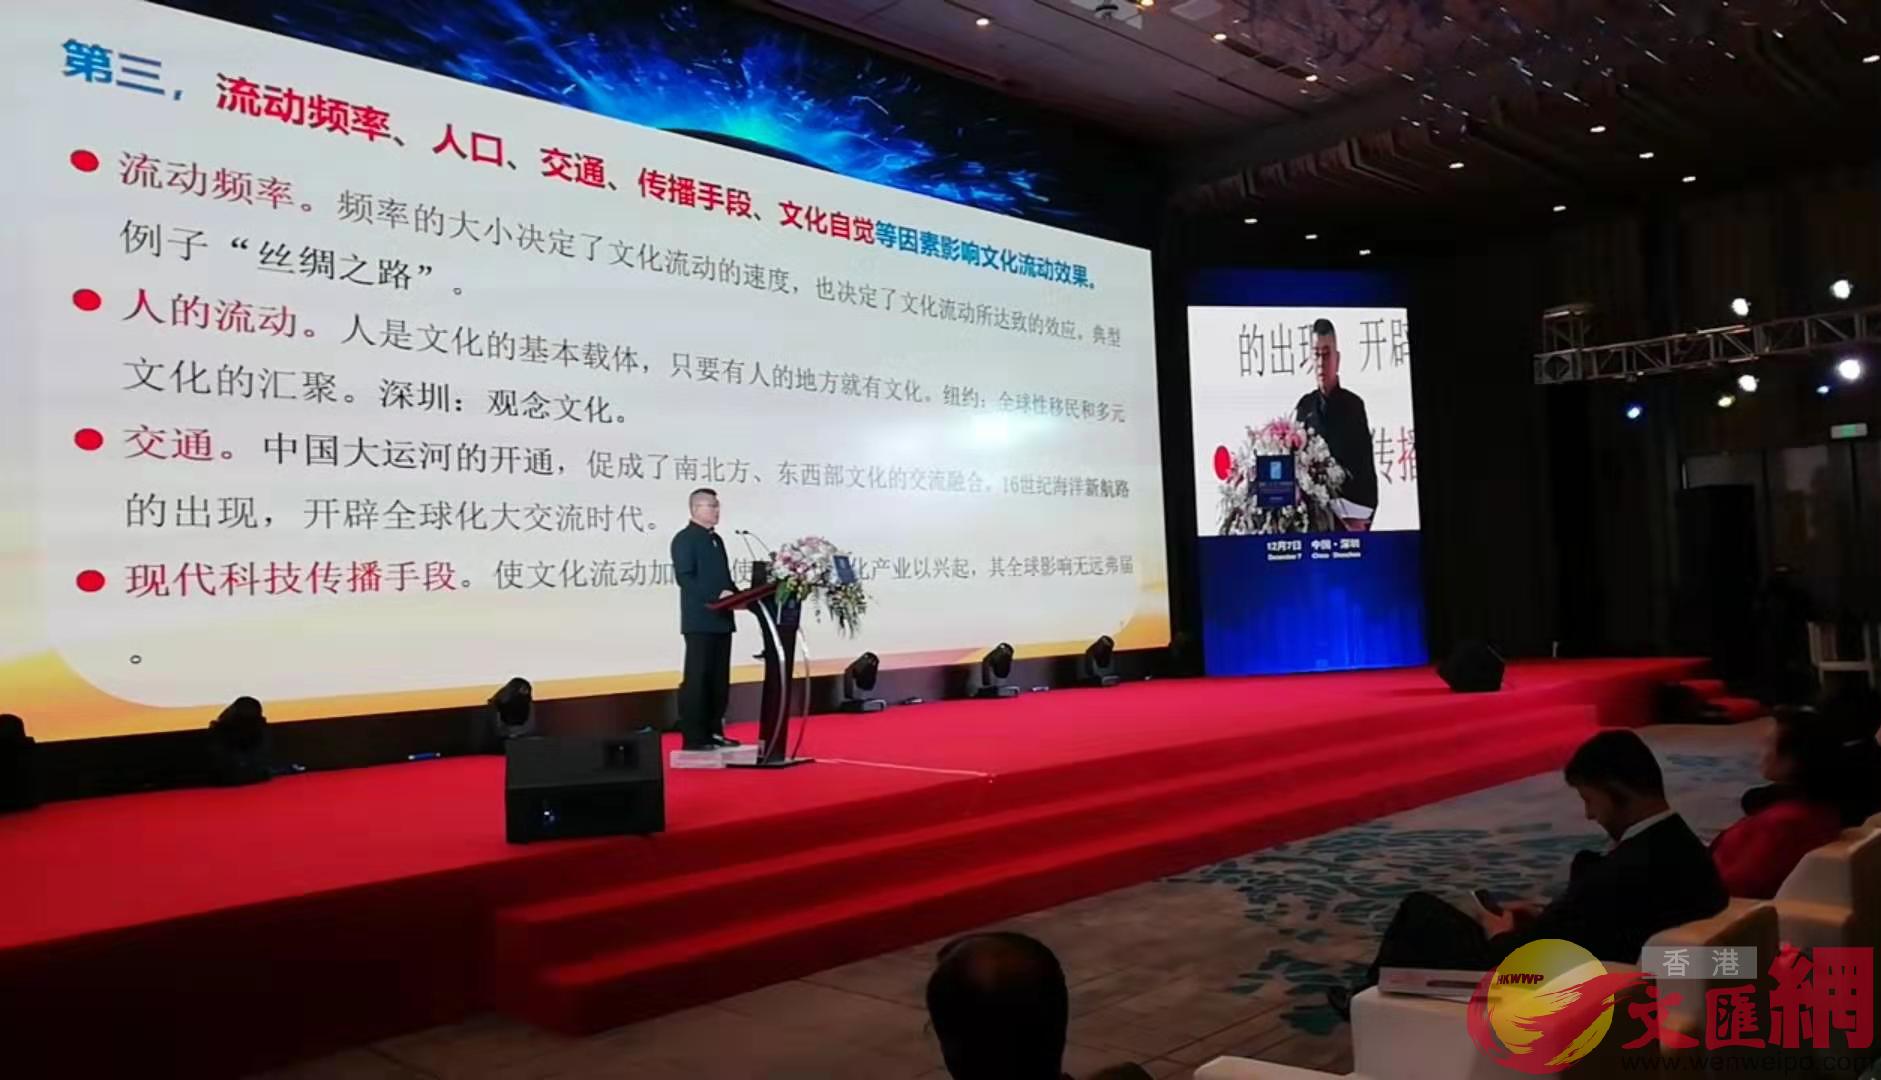 國務院參事王京生表示Au一帶一路v建設必須打好文化流動這張牌C]記者 李昌鴻 攝^